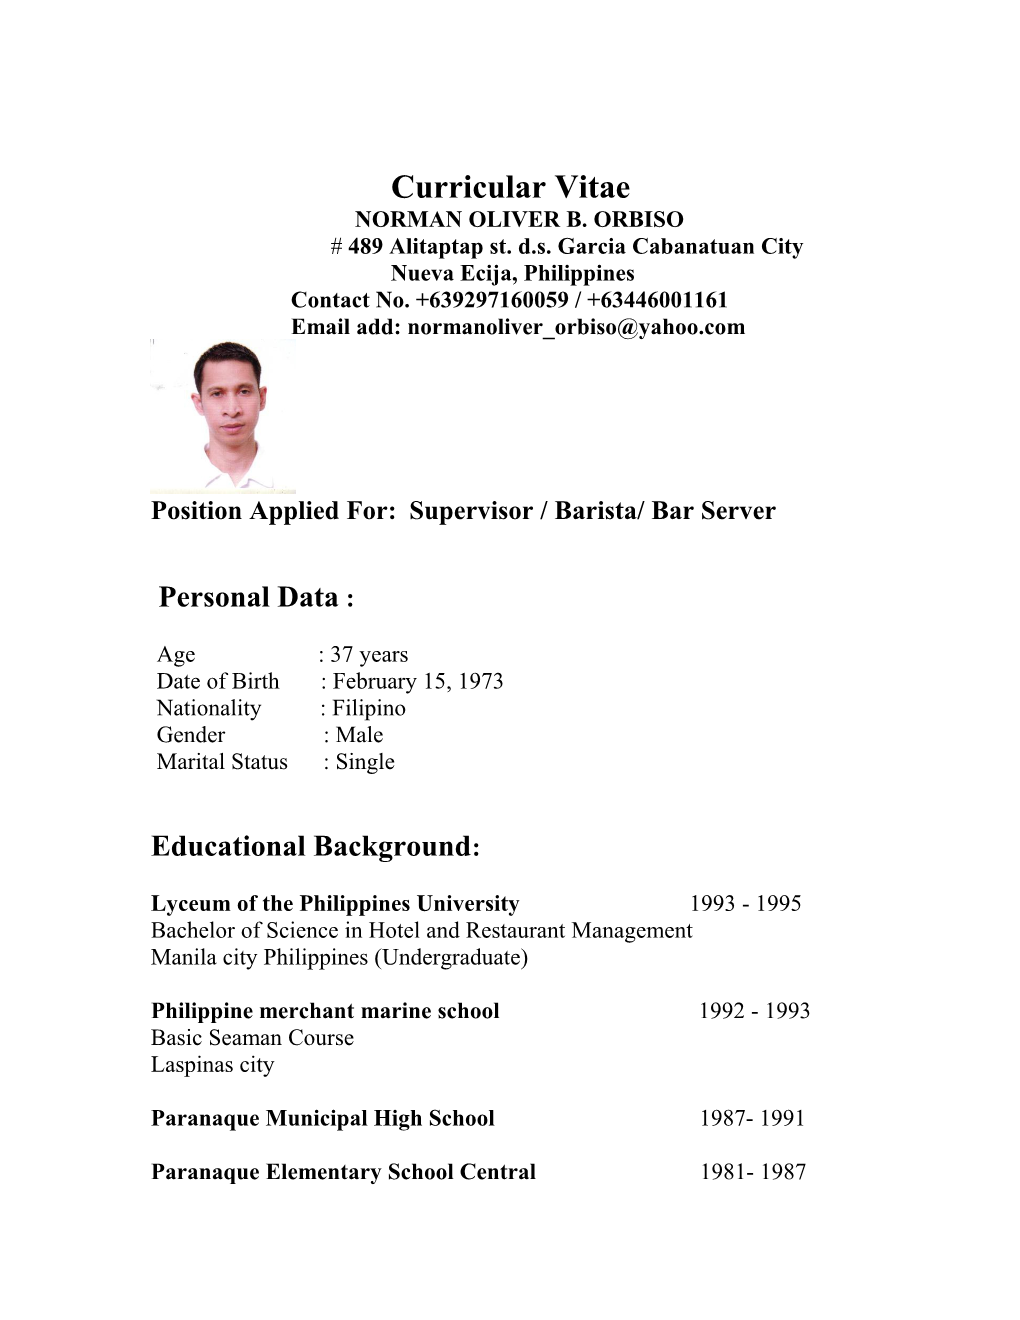 Position Applied For: Supervisor / Barista/ Bar Server